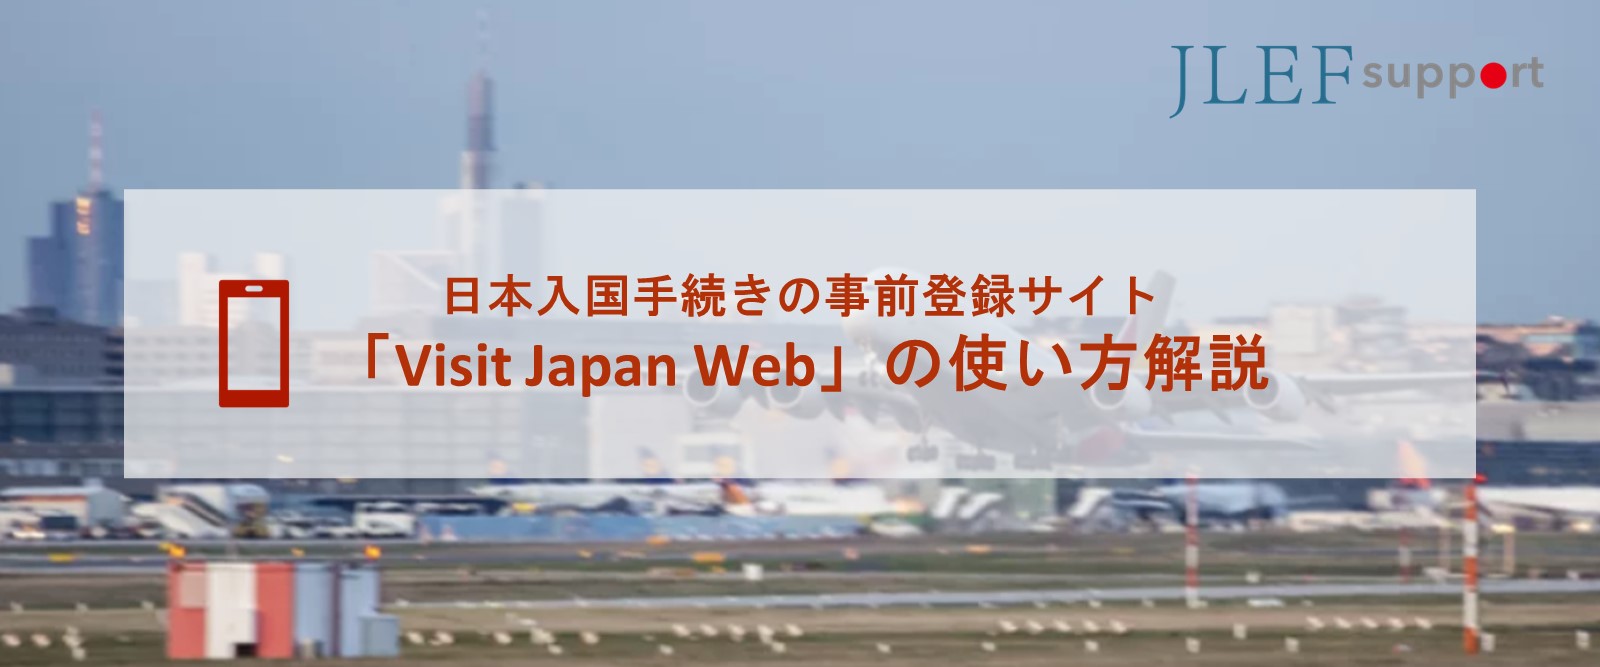 日本入国： 「Visit Japan Web」の使い方解説